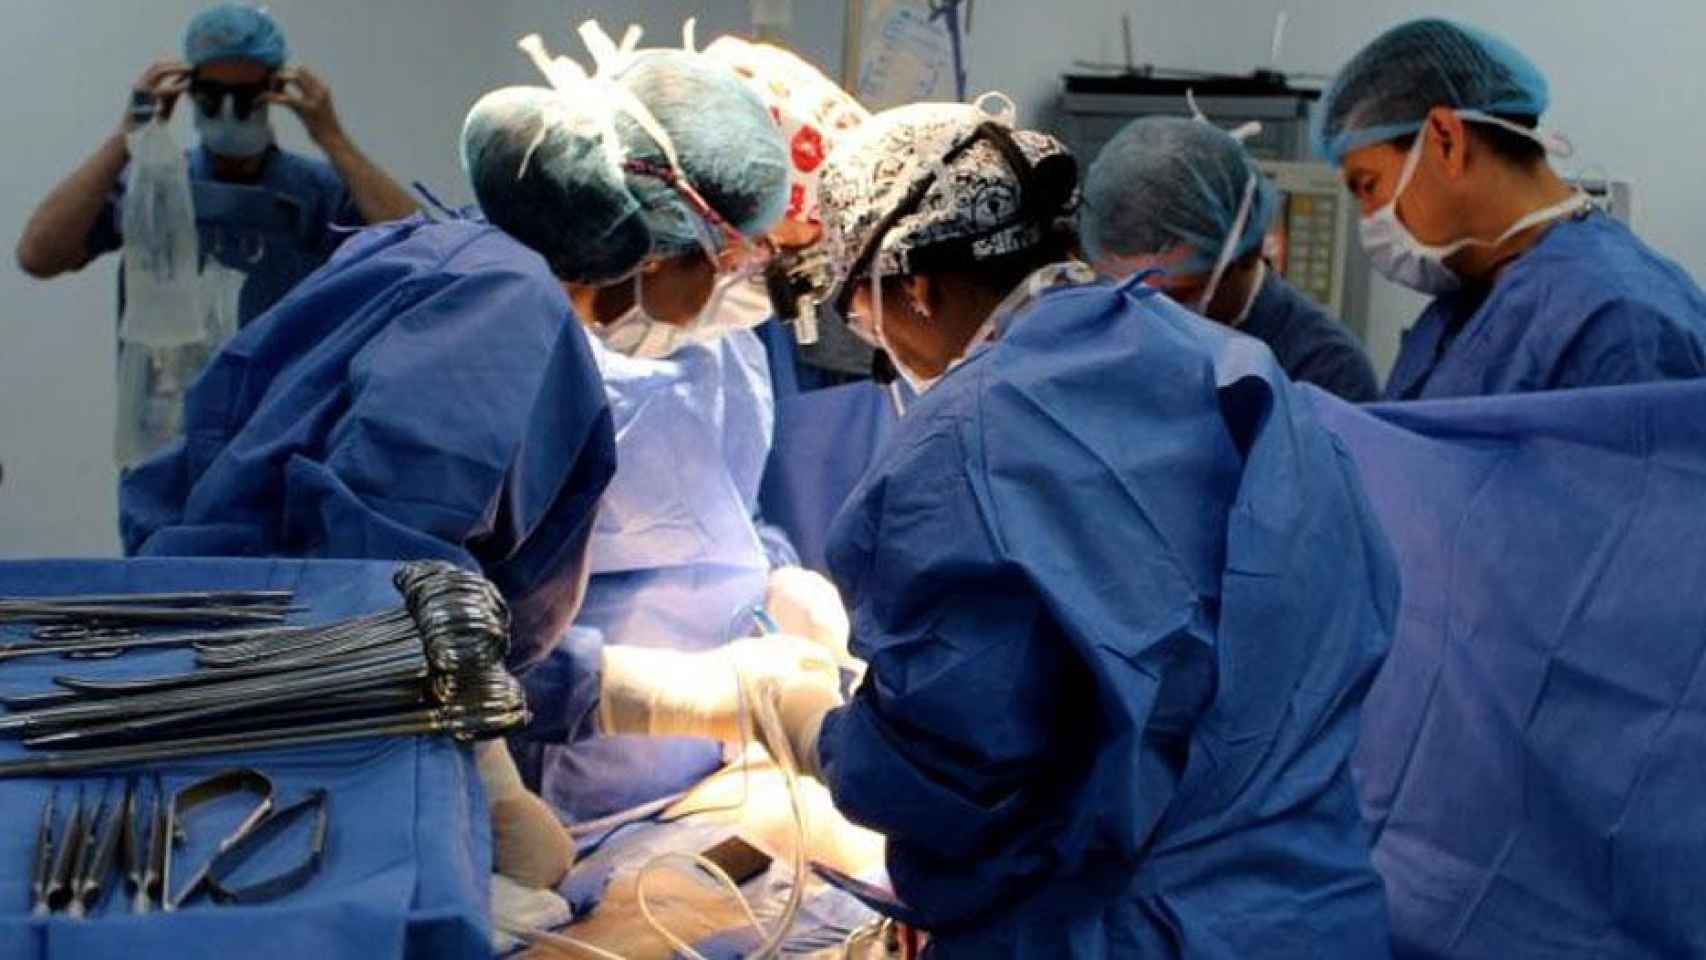 Cirujanos operan a un paciente. Imagen de un artículo sobre los enfermeros / EFE